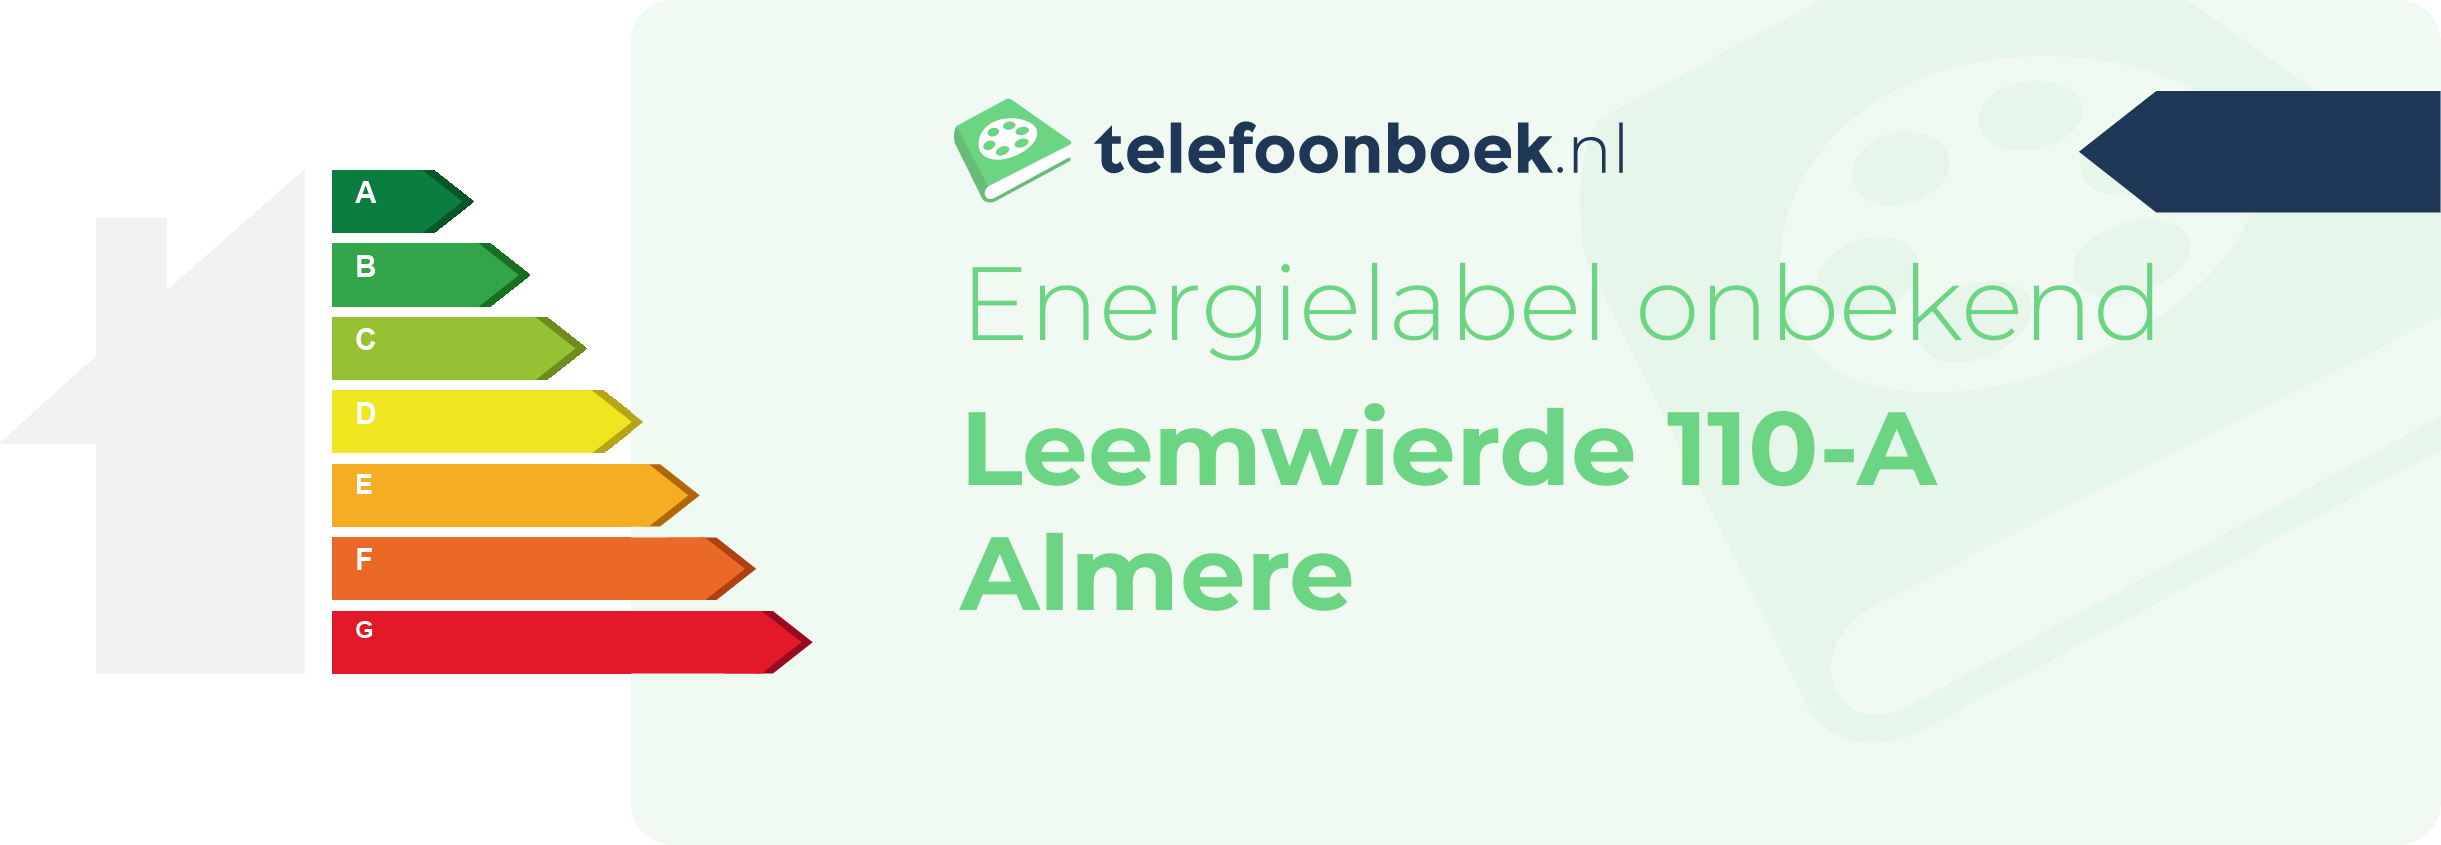 Energielabel Leemwierde 110-A Almere